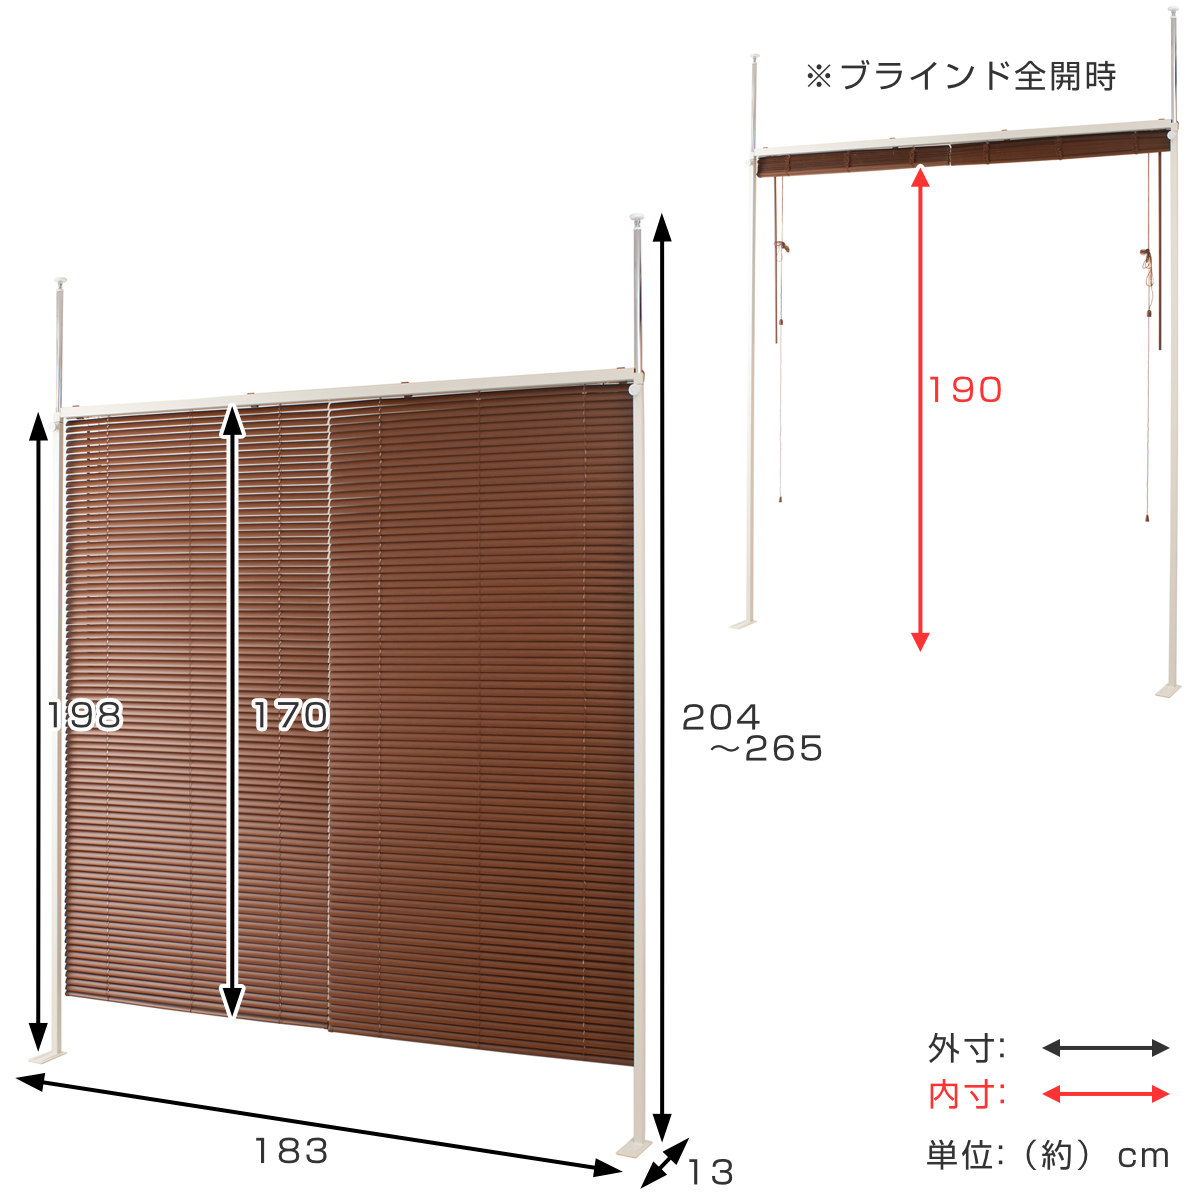 .. обивка шторы разделитель двойной модель ширина 183cm высота 198cm сделано в Японии (.... разделитель шторы перегородка разделительный экран )